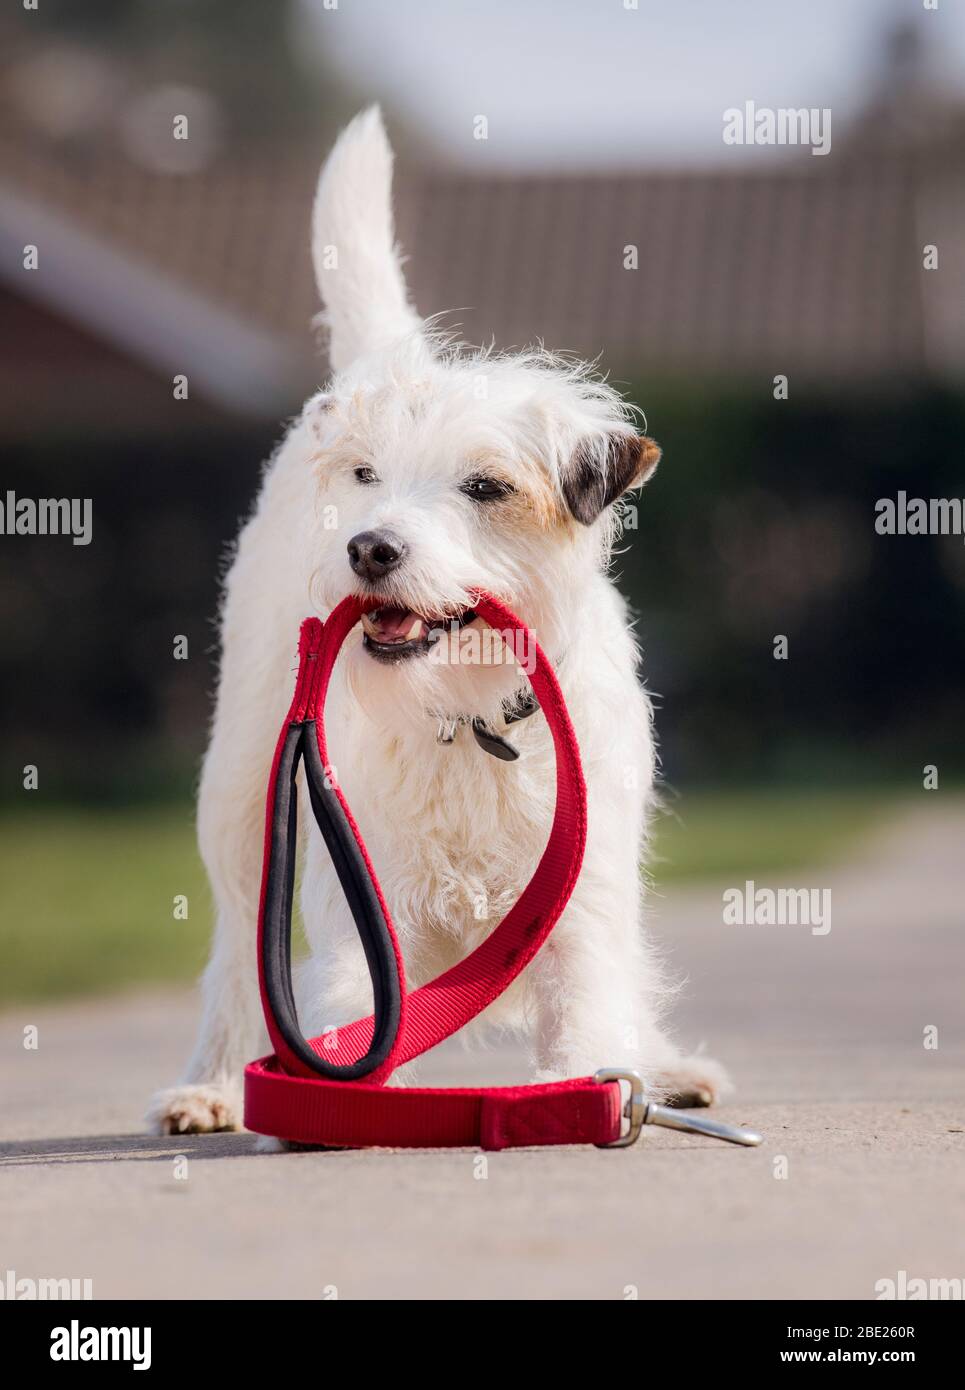 Schlumpf der ausführende Hund - der Parson Russell Terrier hat den Guinness-Weltrekord für die meisten Tricks in 1 Minute. Stockfoto